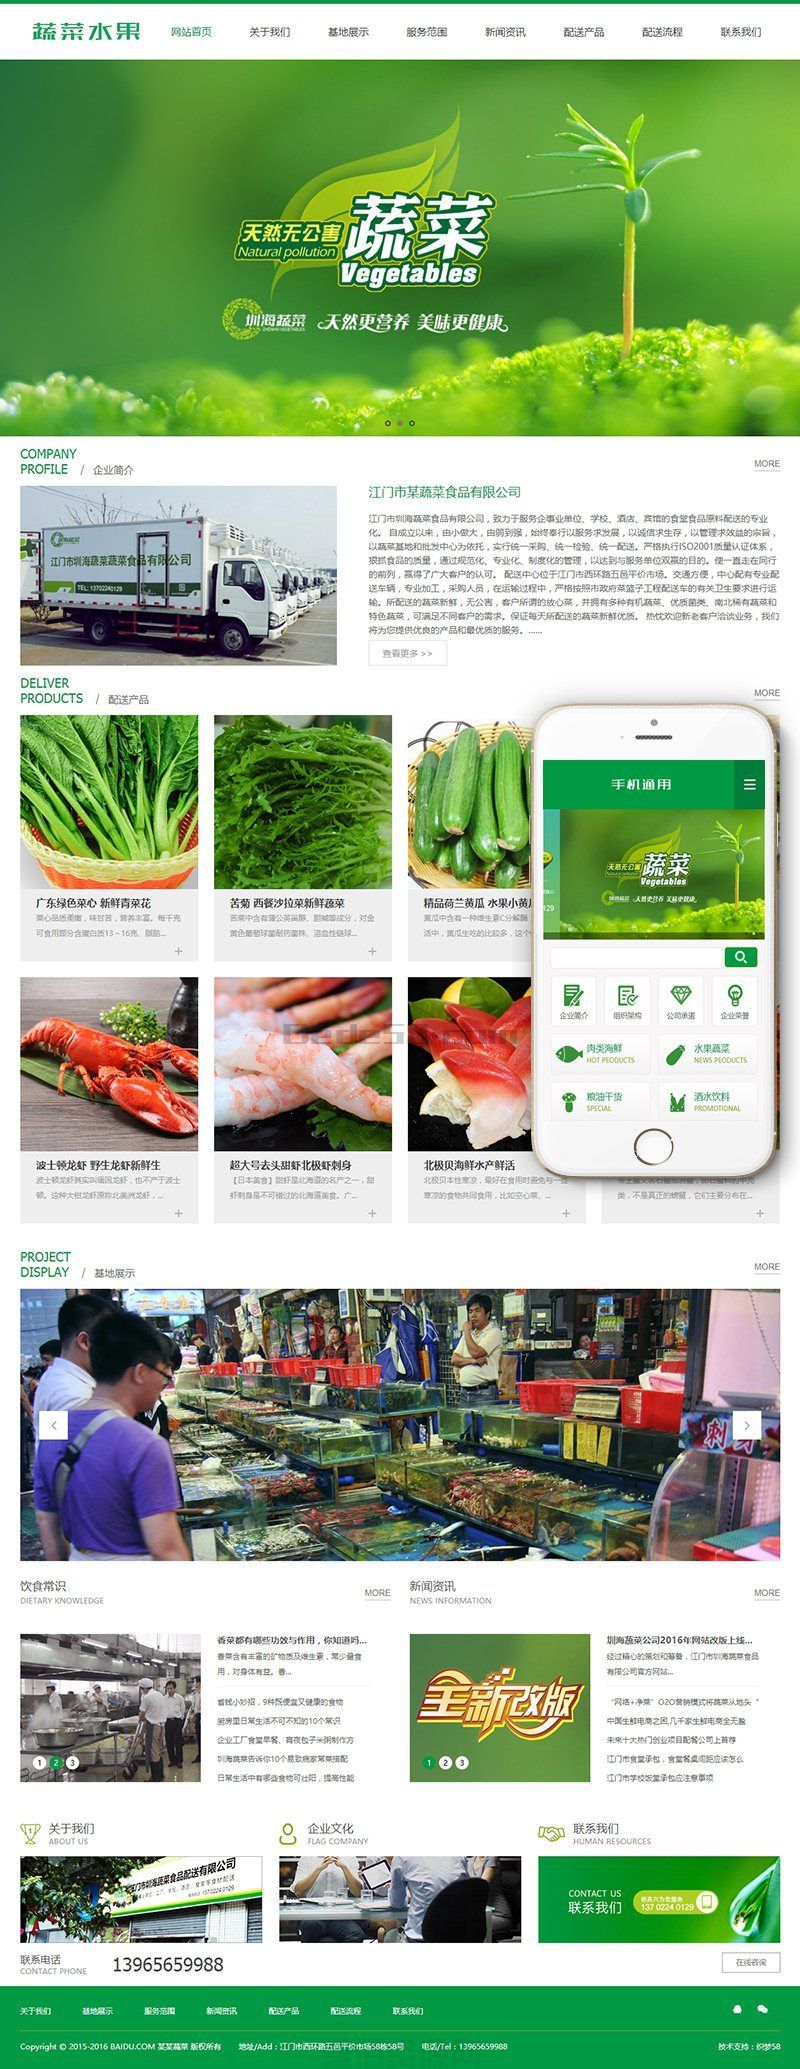 绿色蔬菜水果产品网站源码+果蔬配送服务网站织梦模板(带手机版数据同步)(图1)